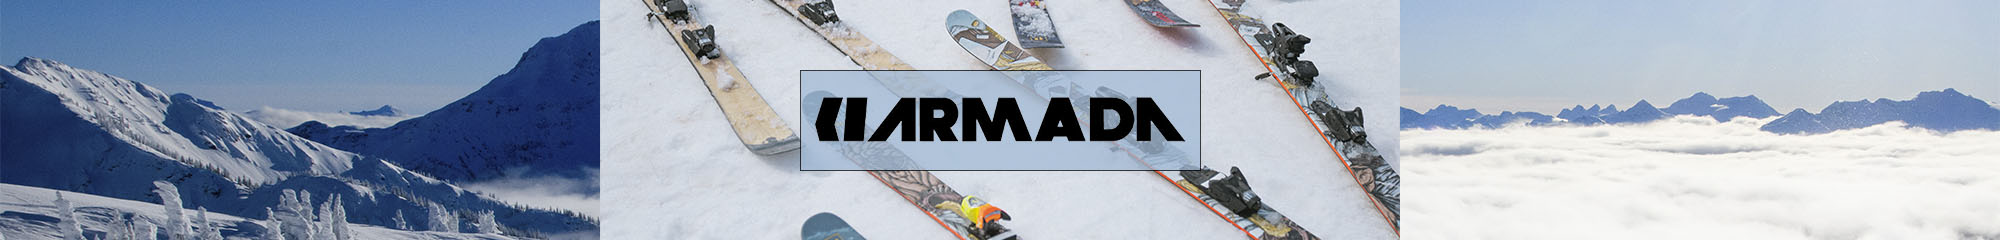 Armada ARV Skis at Sun & Ski Sports